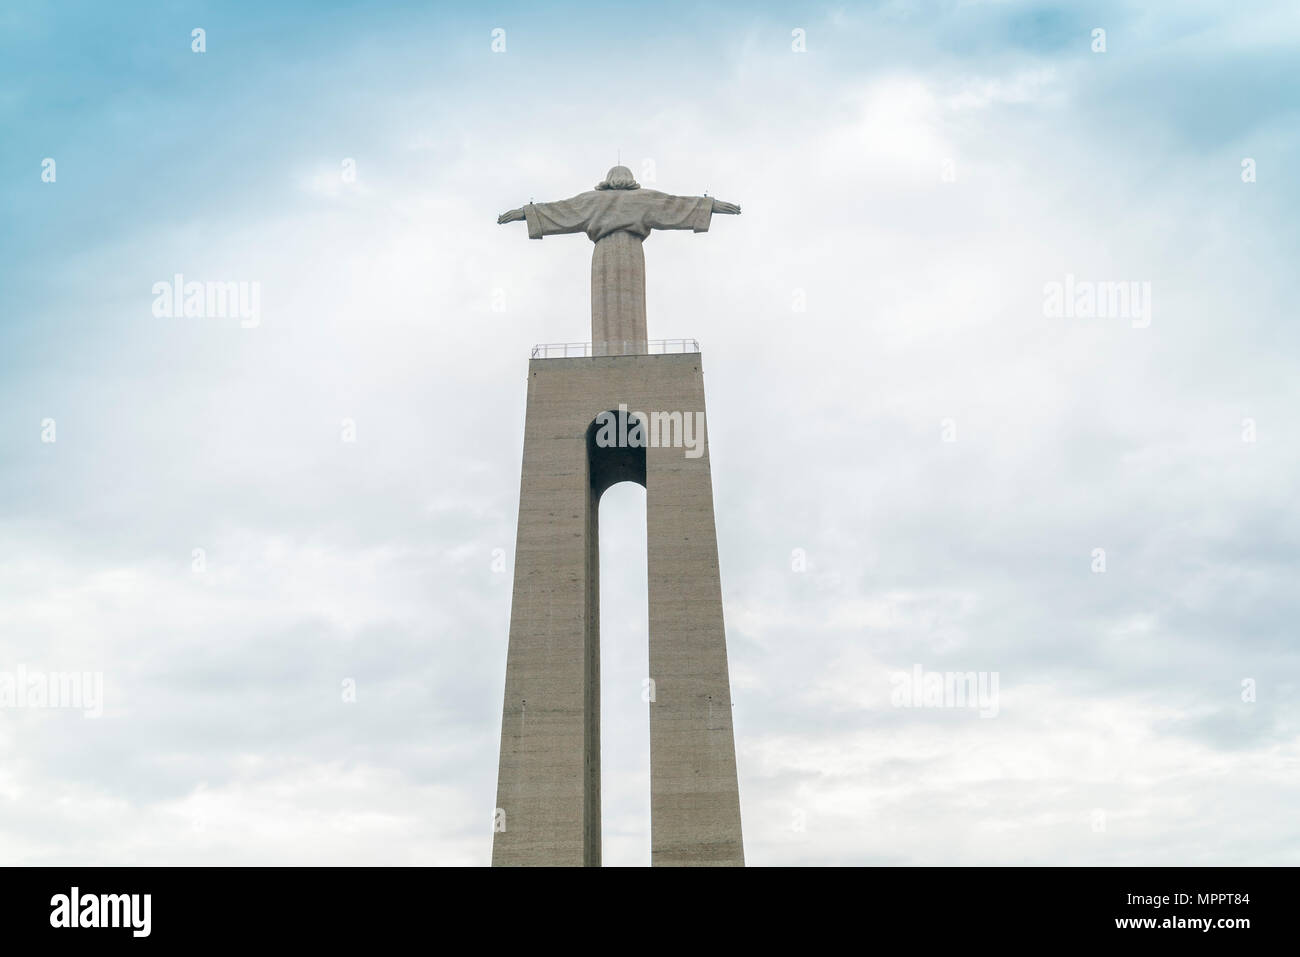 Portugal, Lisbonne, Almada, Cristo-Rei, vue du monument catholique et statue de Jésus Christ Banque D'Images